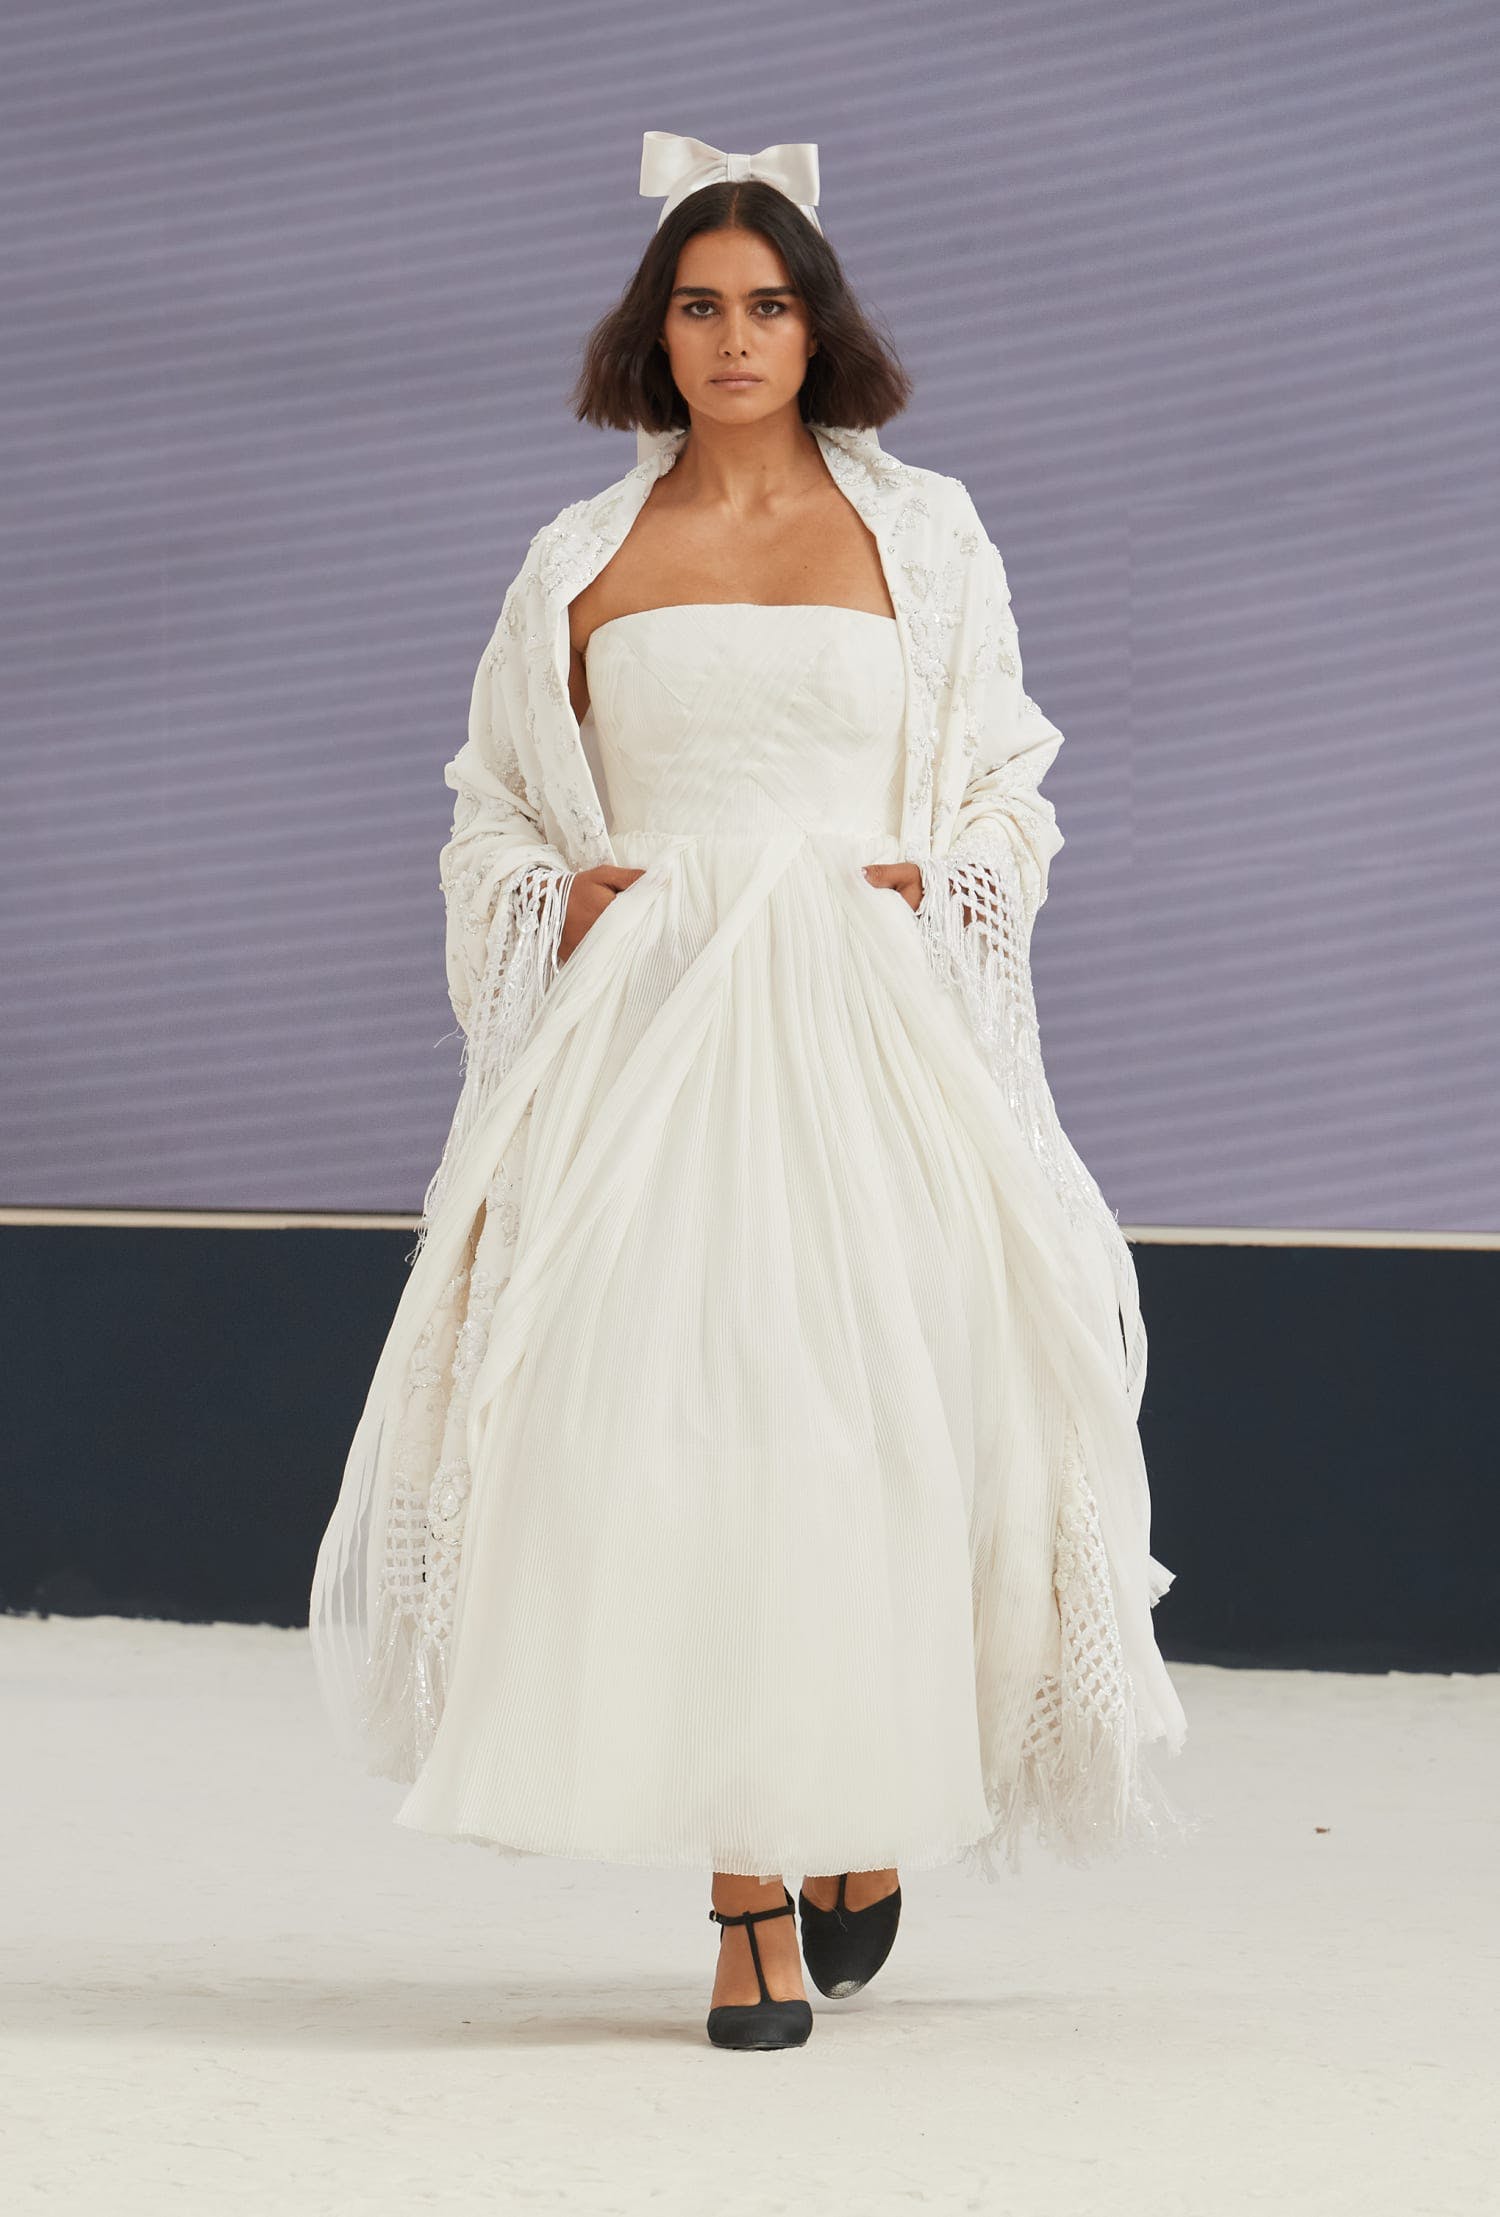 Phượng Chanel chi hơn 70 triệu sắm váy Dior vừa ra lò, tiếc thay cách phối  vừa cũ vừa dìm dáng